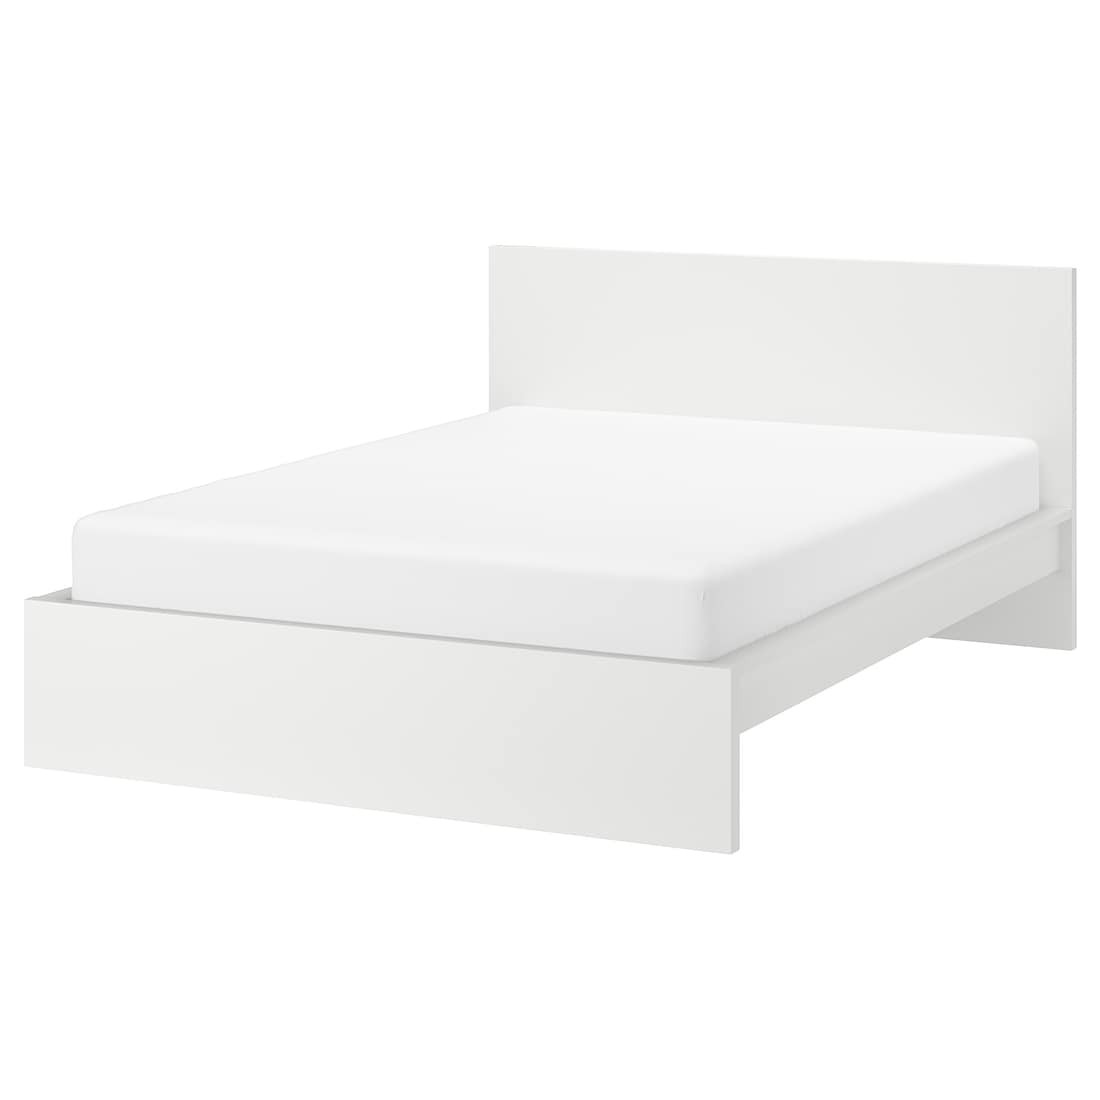 MALM МАЛЬМ Ліжко двоспальне, високе, білий / Ліндбаден, 140x200 см